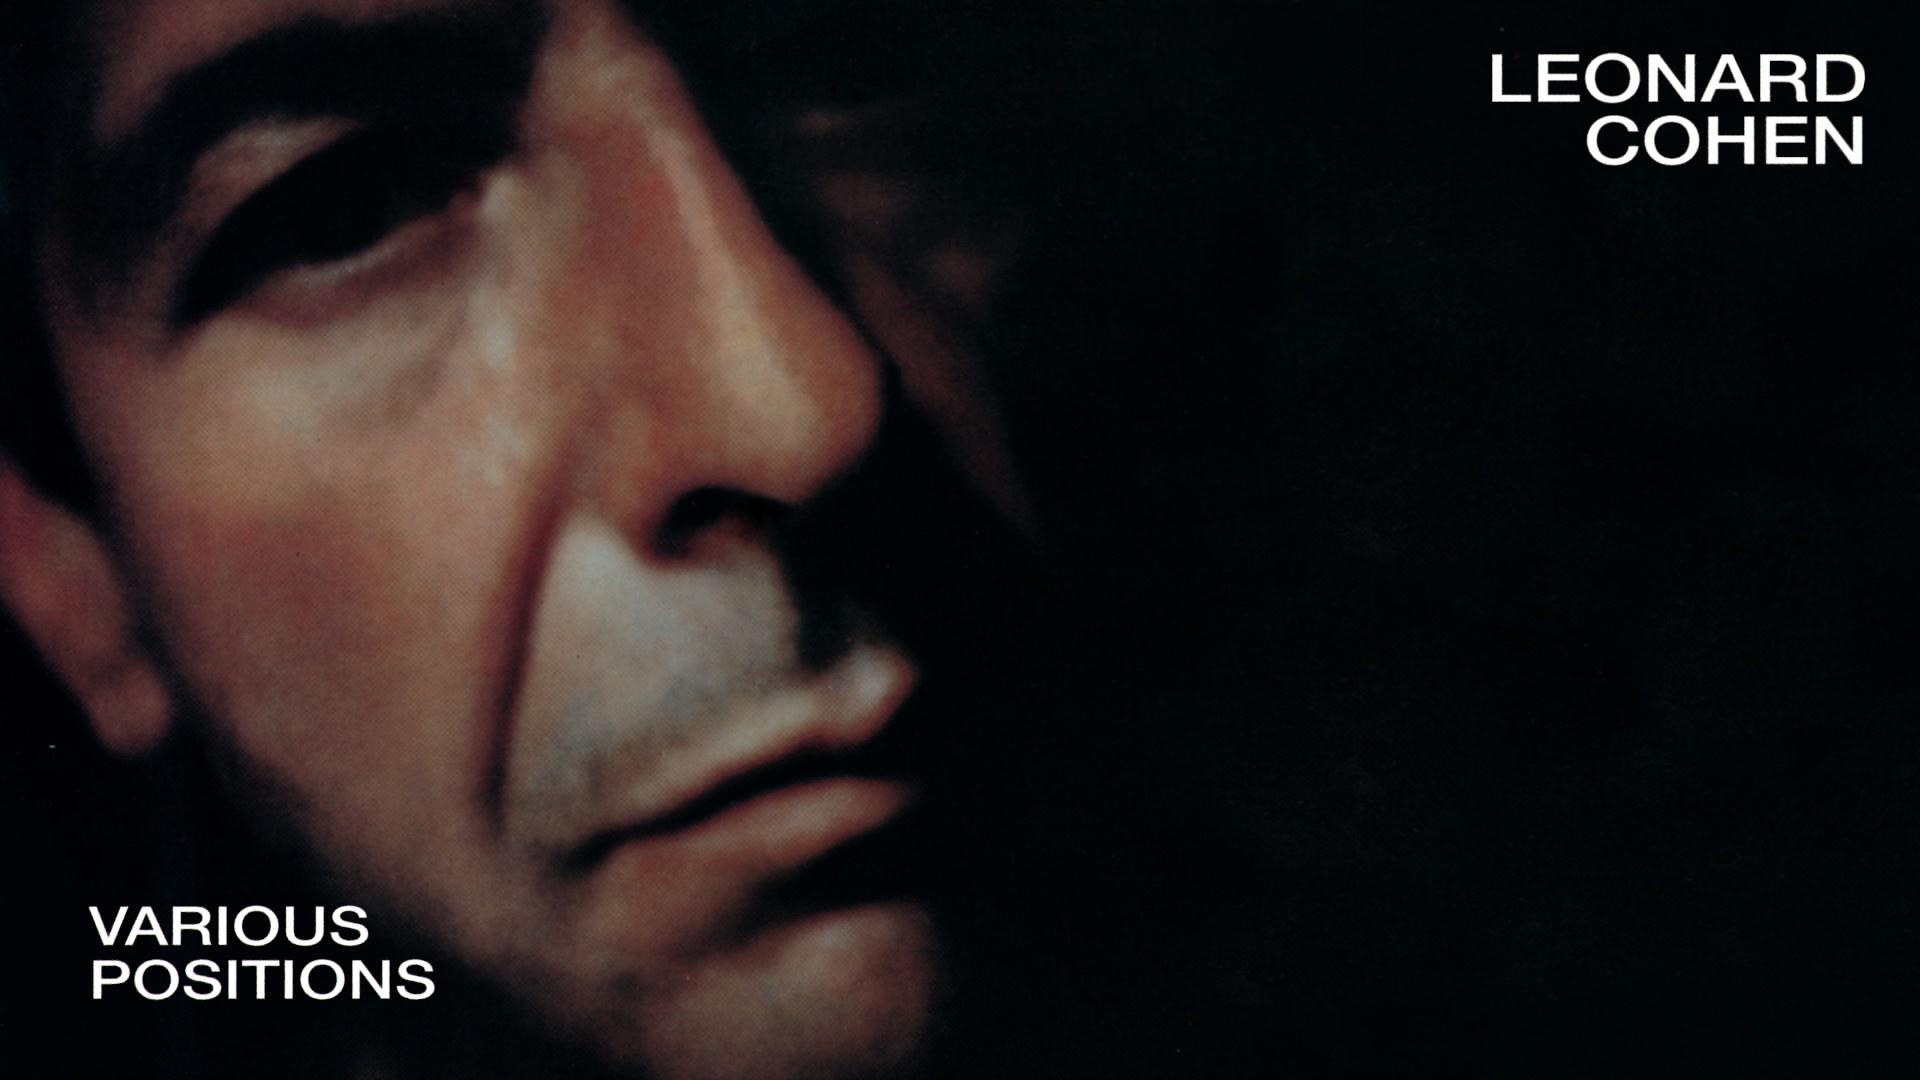 Leonard Cohen - The Captain (Official Audio)